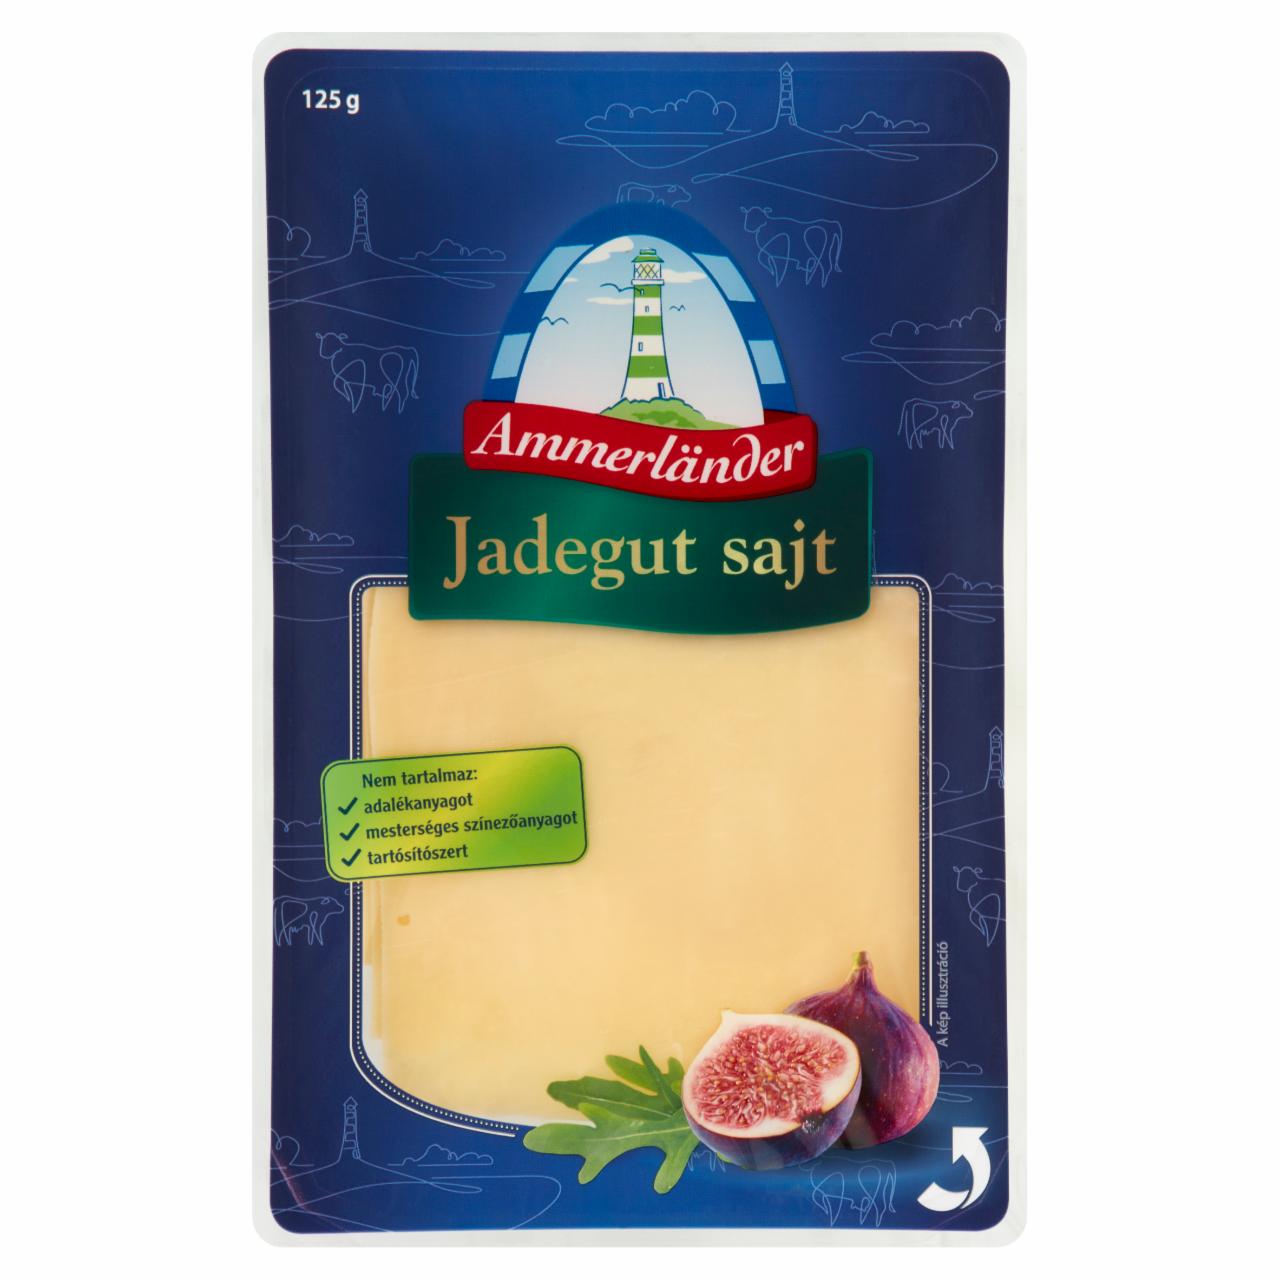 Képek - Ammerländer szeletelt jadegut sajt 125 g